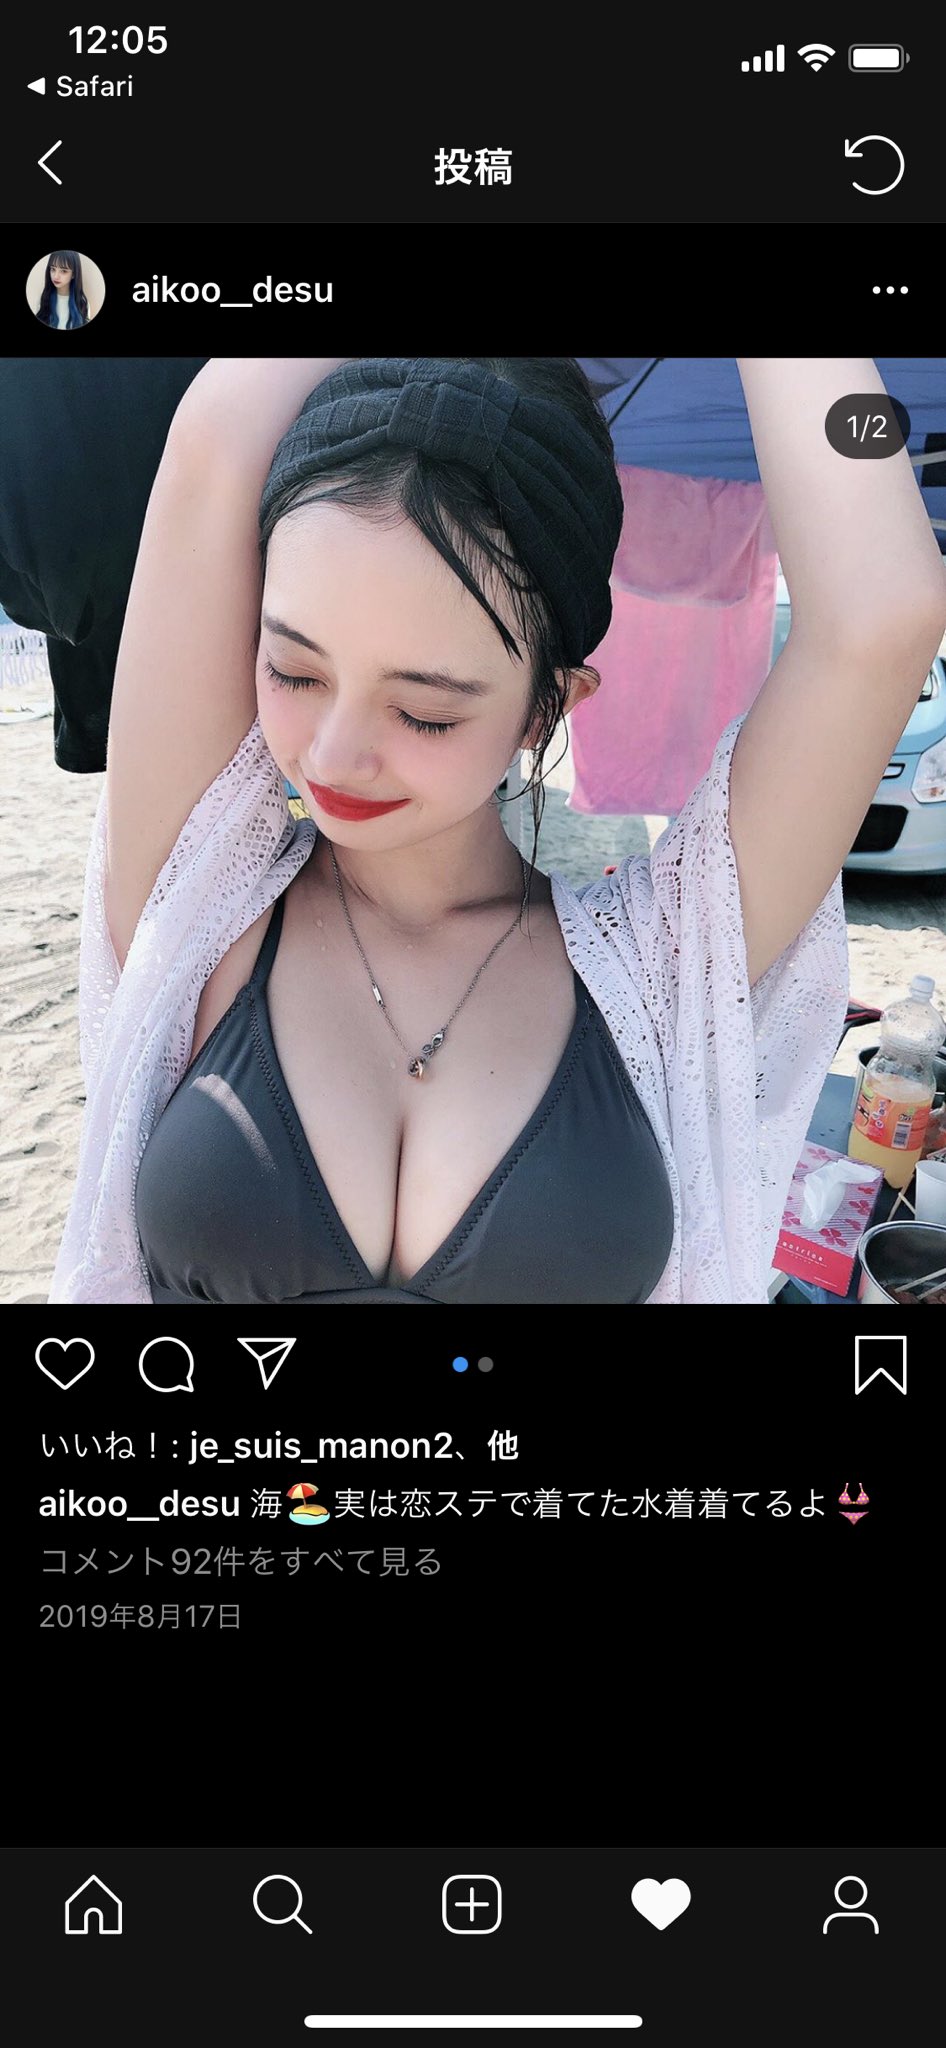 マリア愛子のスタイル抜群な水着画像1